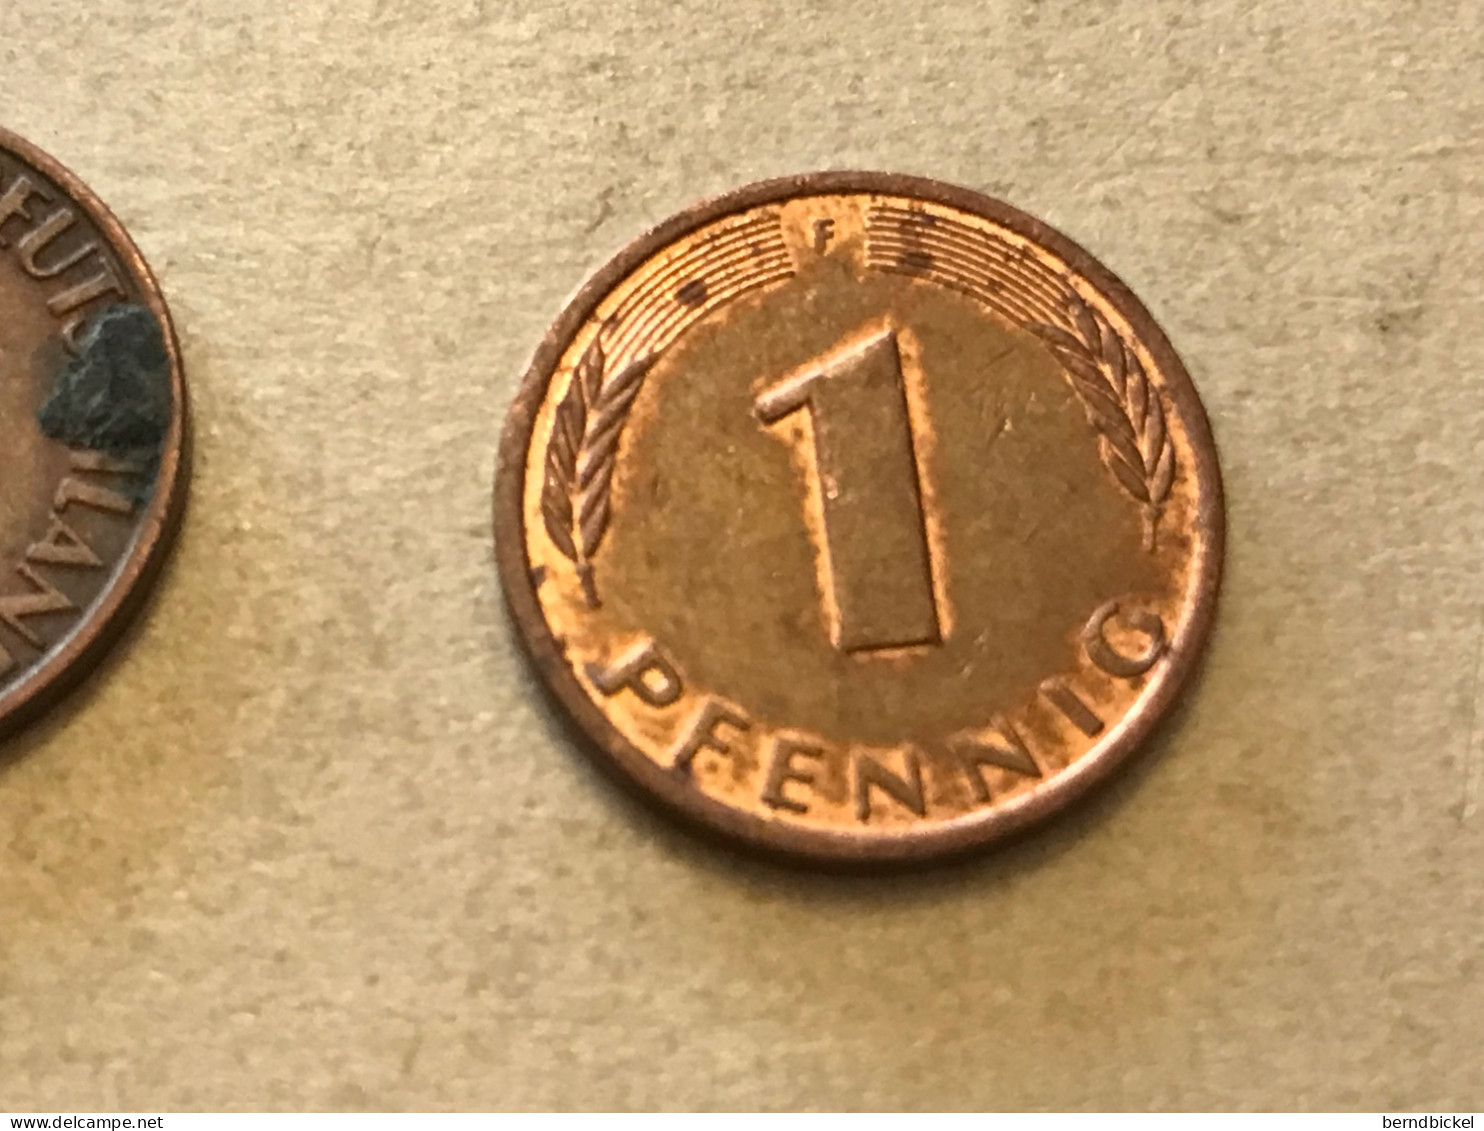 Münze Münzen Umlaufmünze Deutschland BRD 1 Pfennig 1993 Münzzeichen F - 1 Pfennig